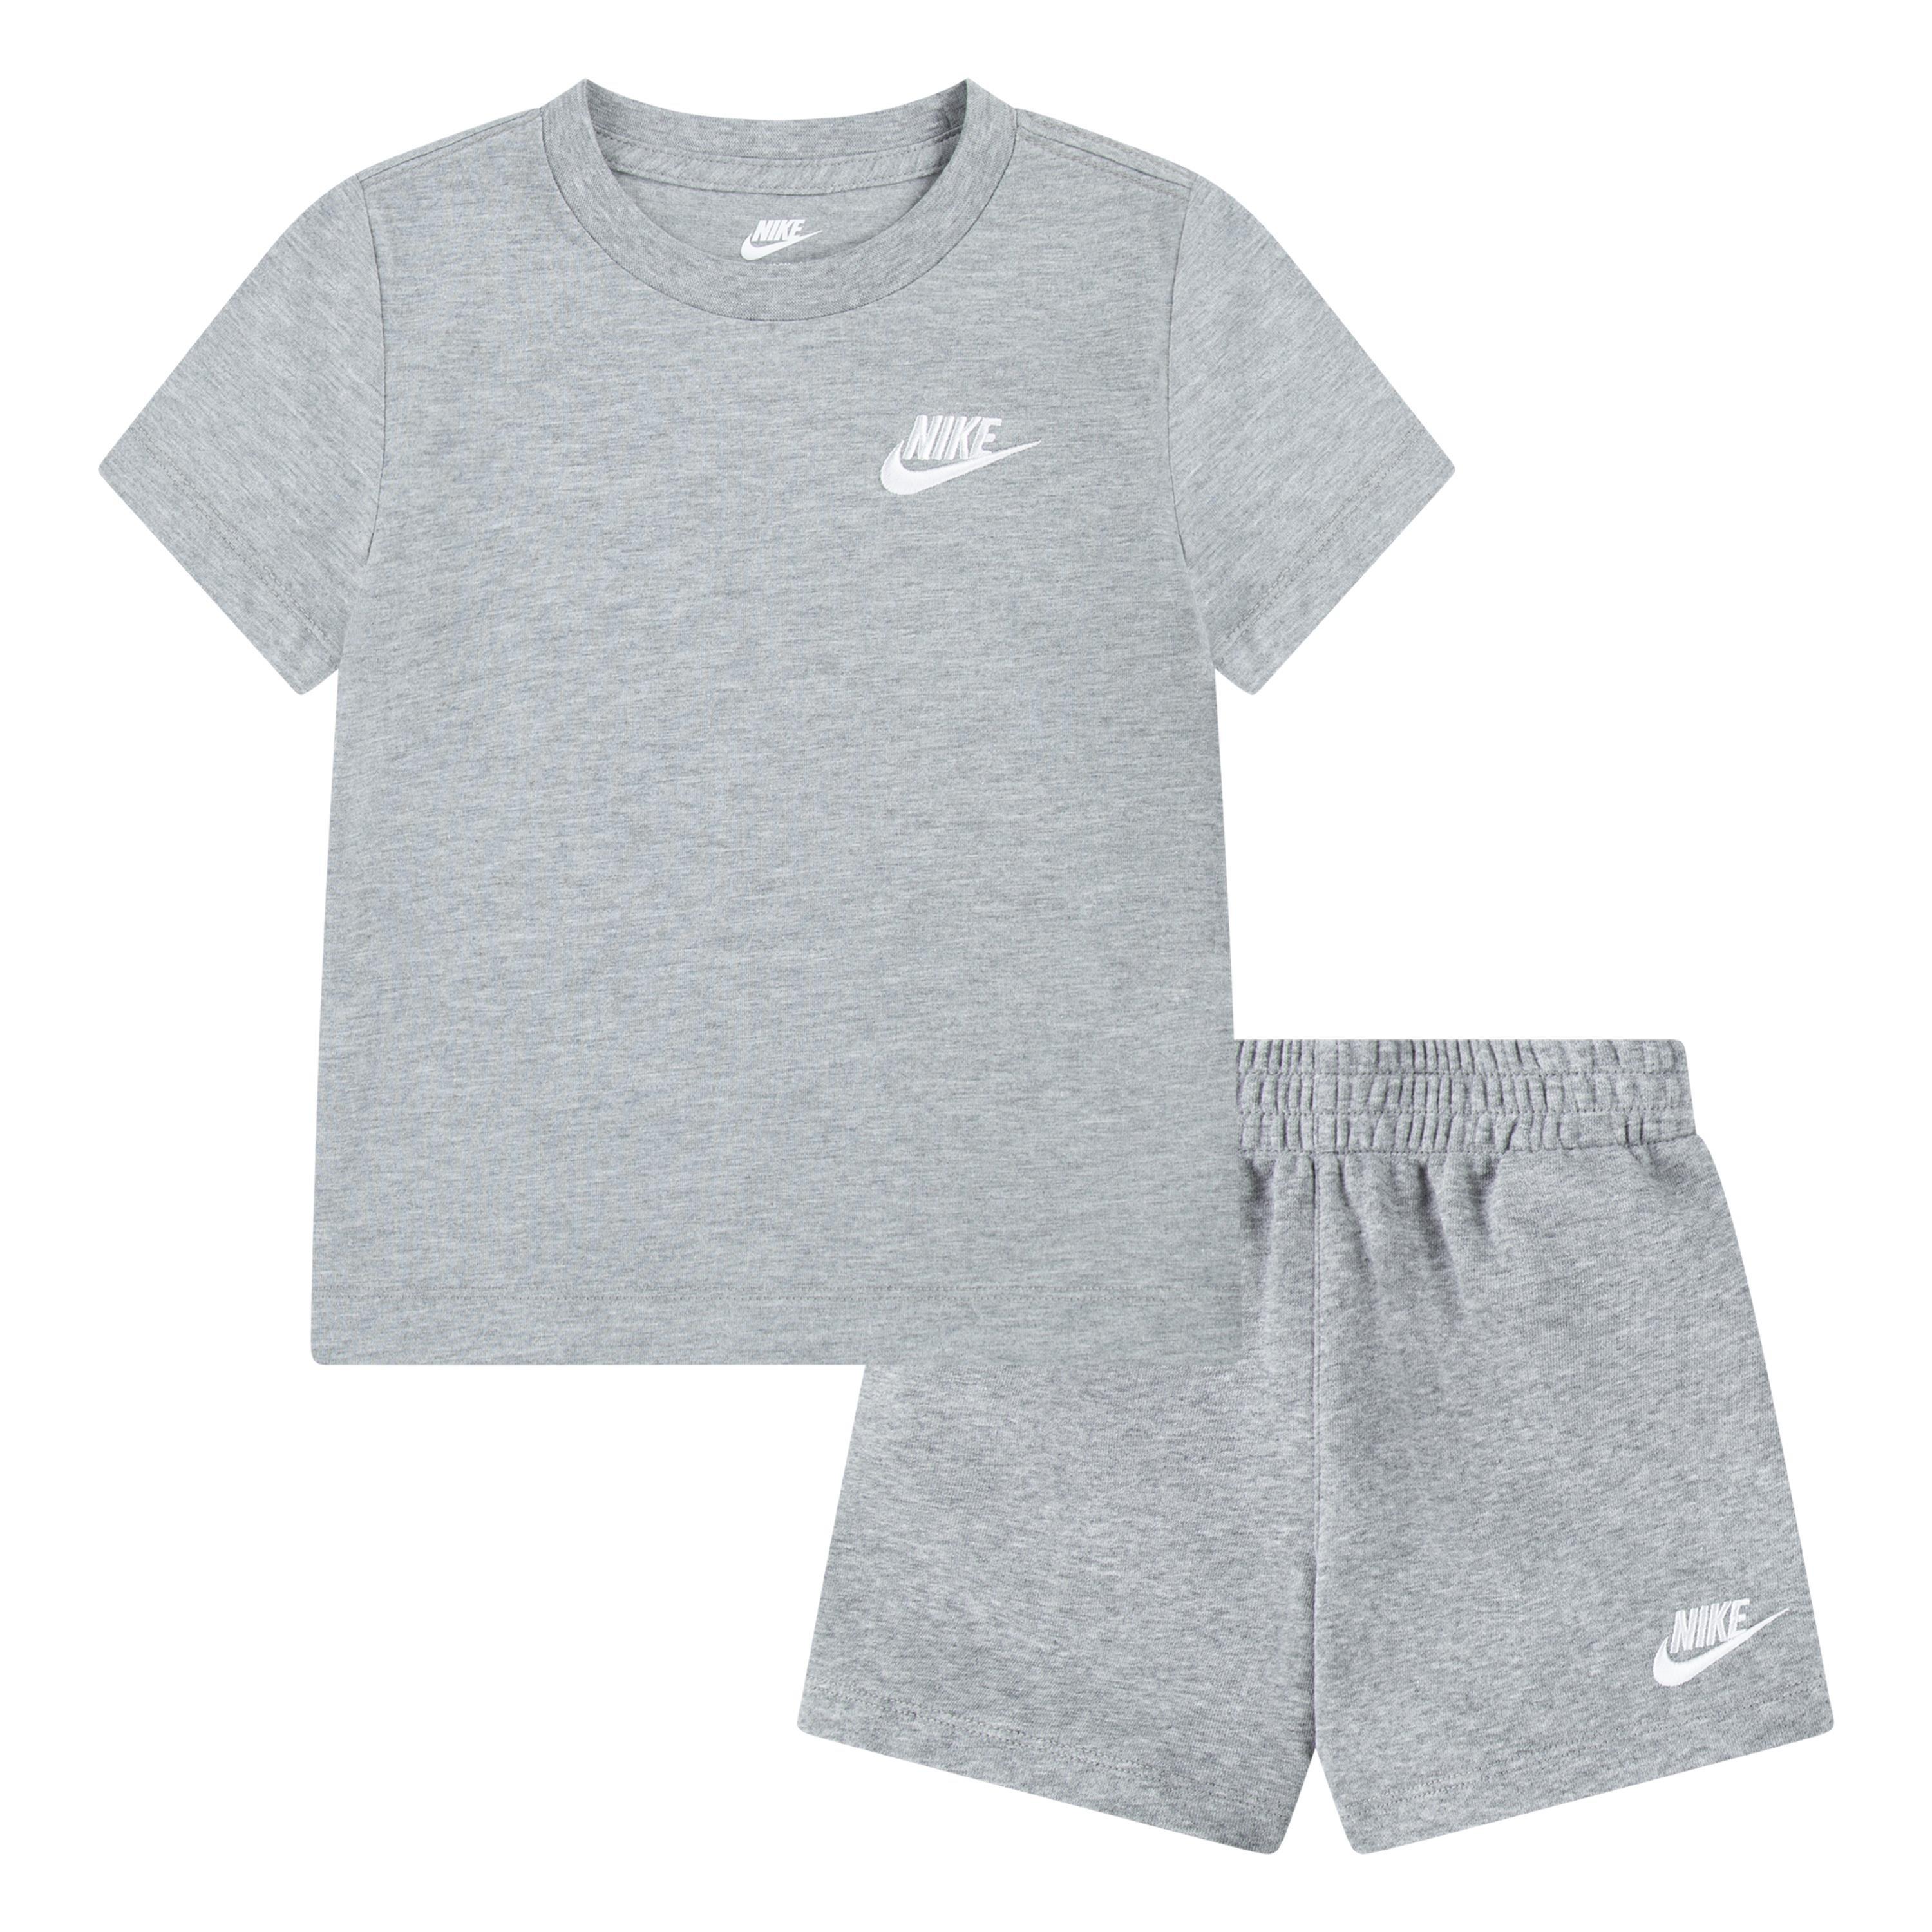 Nike Toddler Boys' Knit Short Set